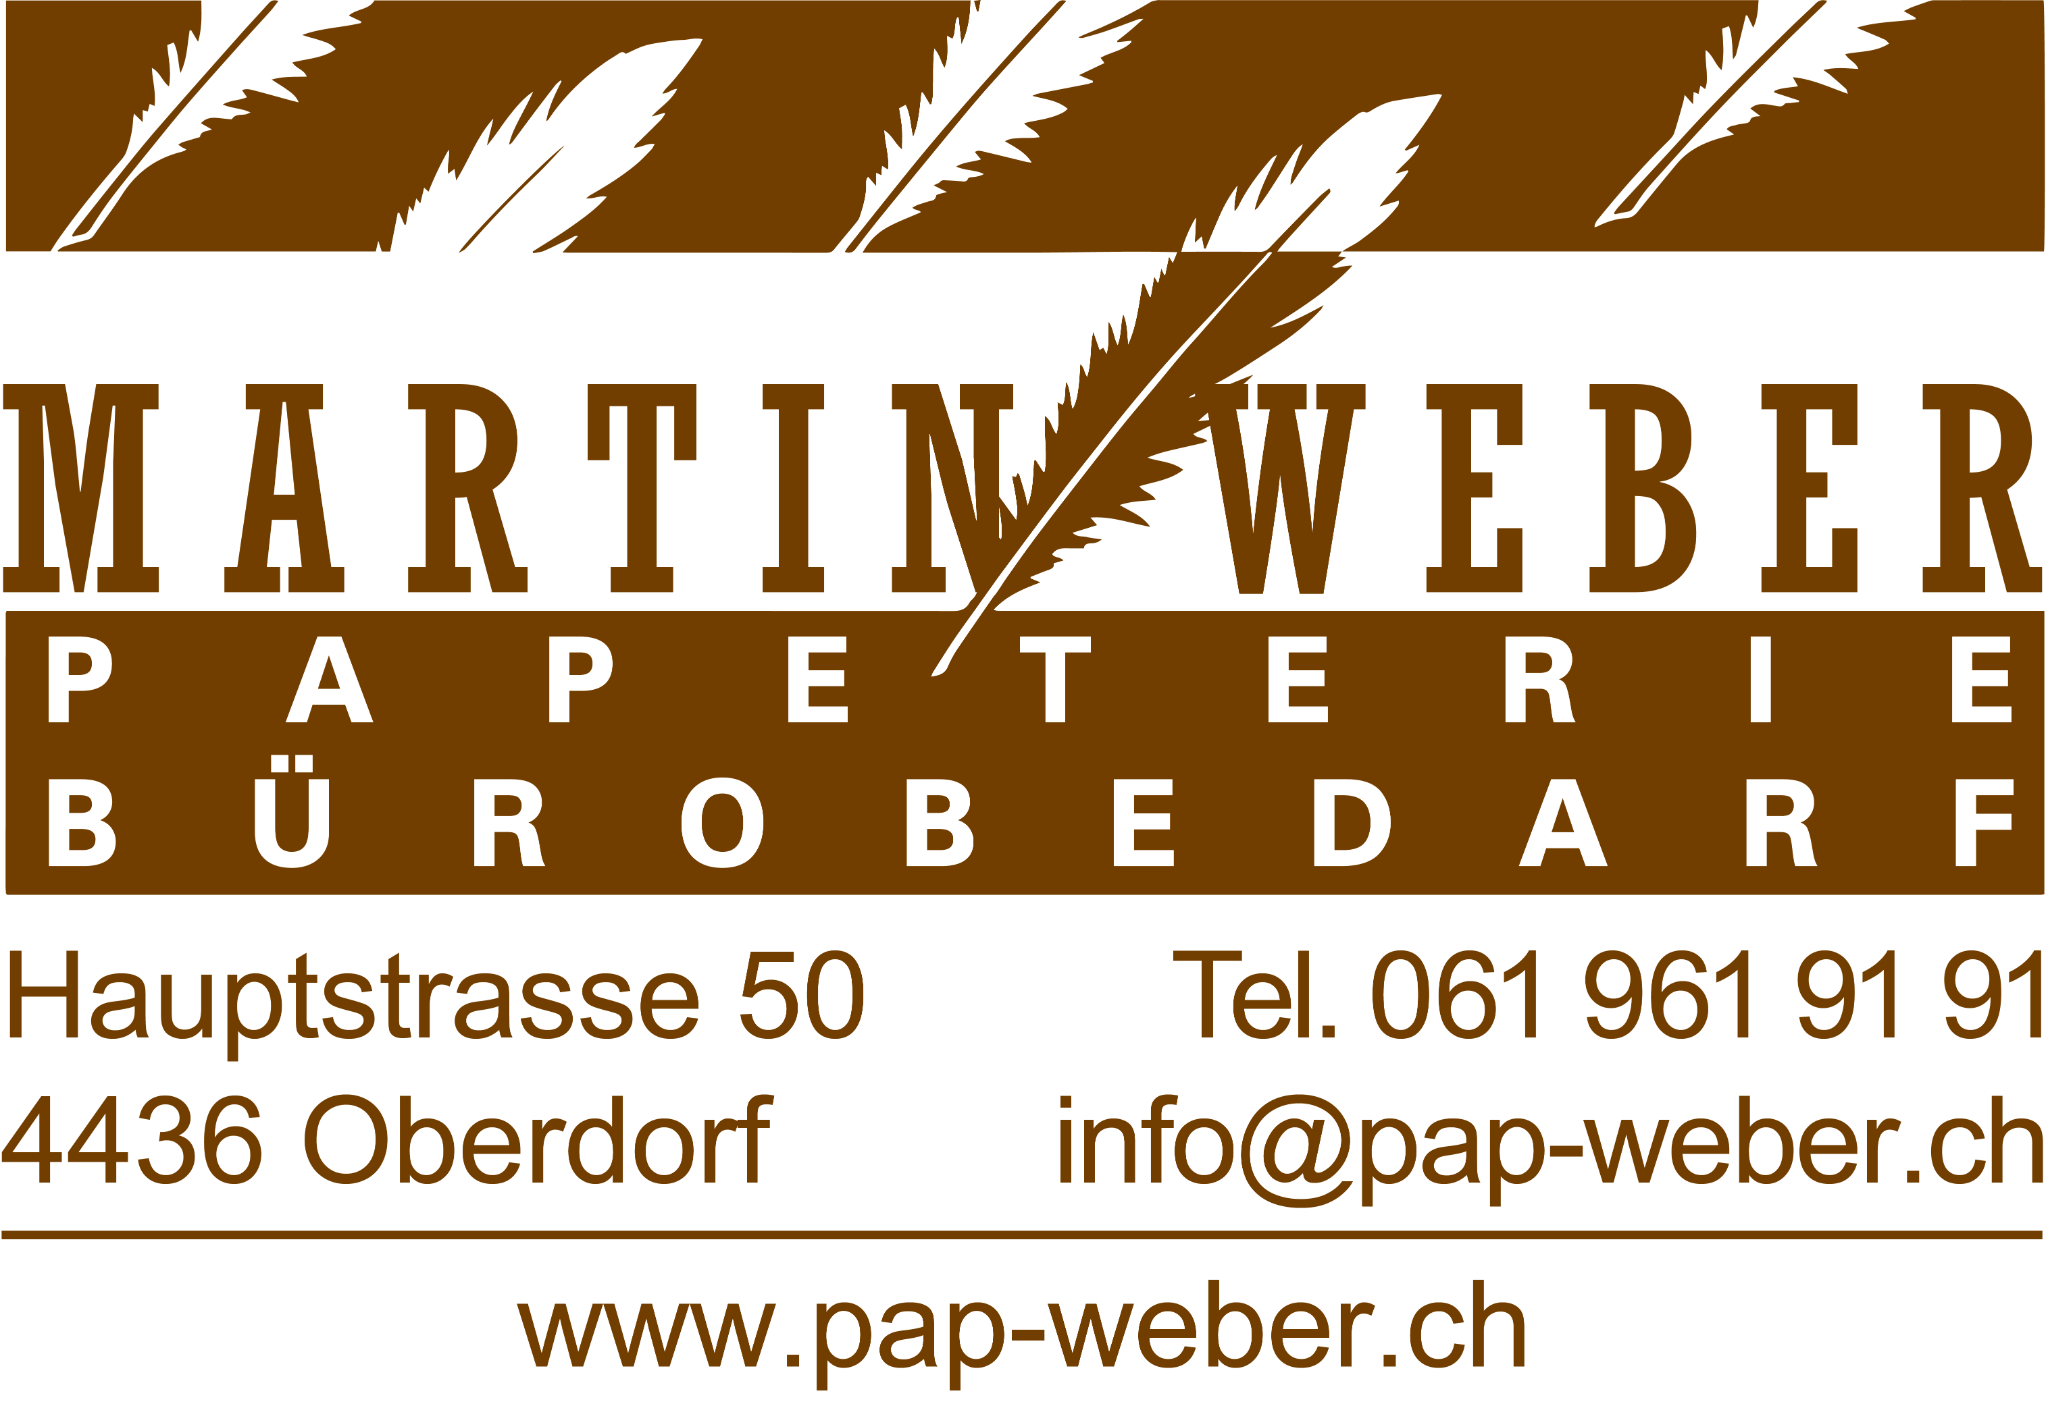 Papeterie Martin Weber